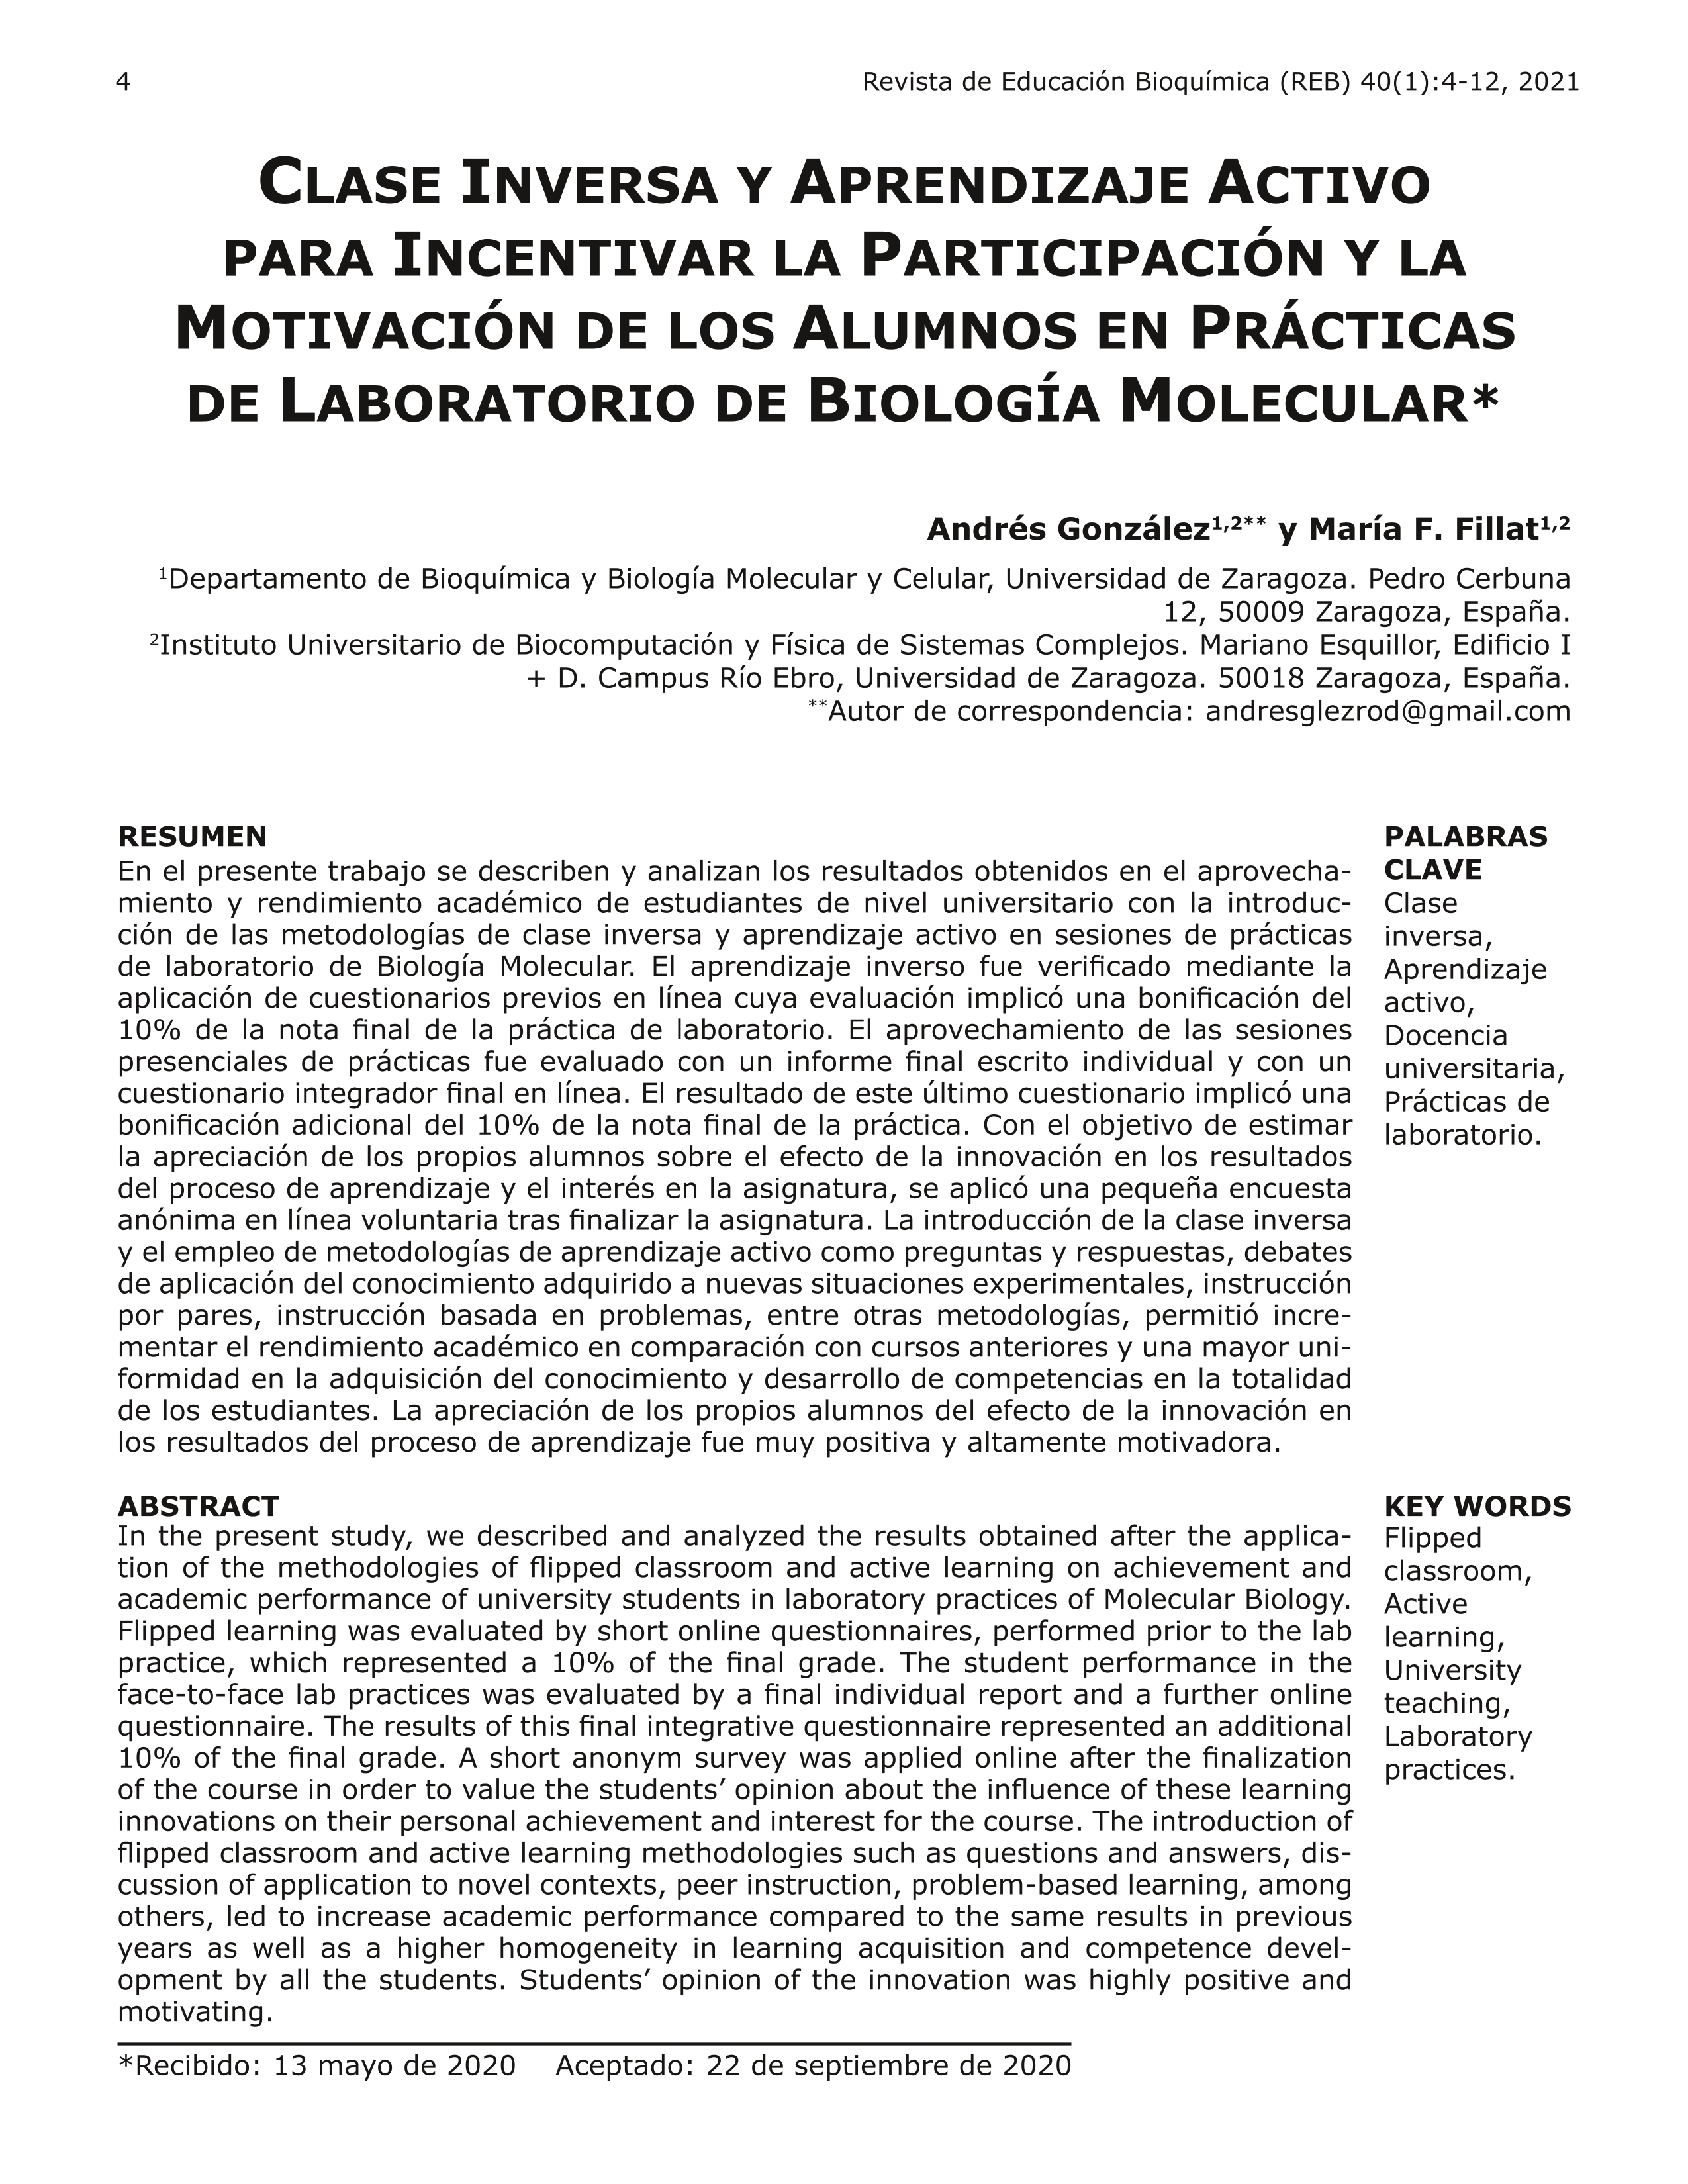 Clase inversa y aprendizaje activo para incentivar la participación y la motivación de los alumnos en prácticas de laboratorio de biología molecular